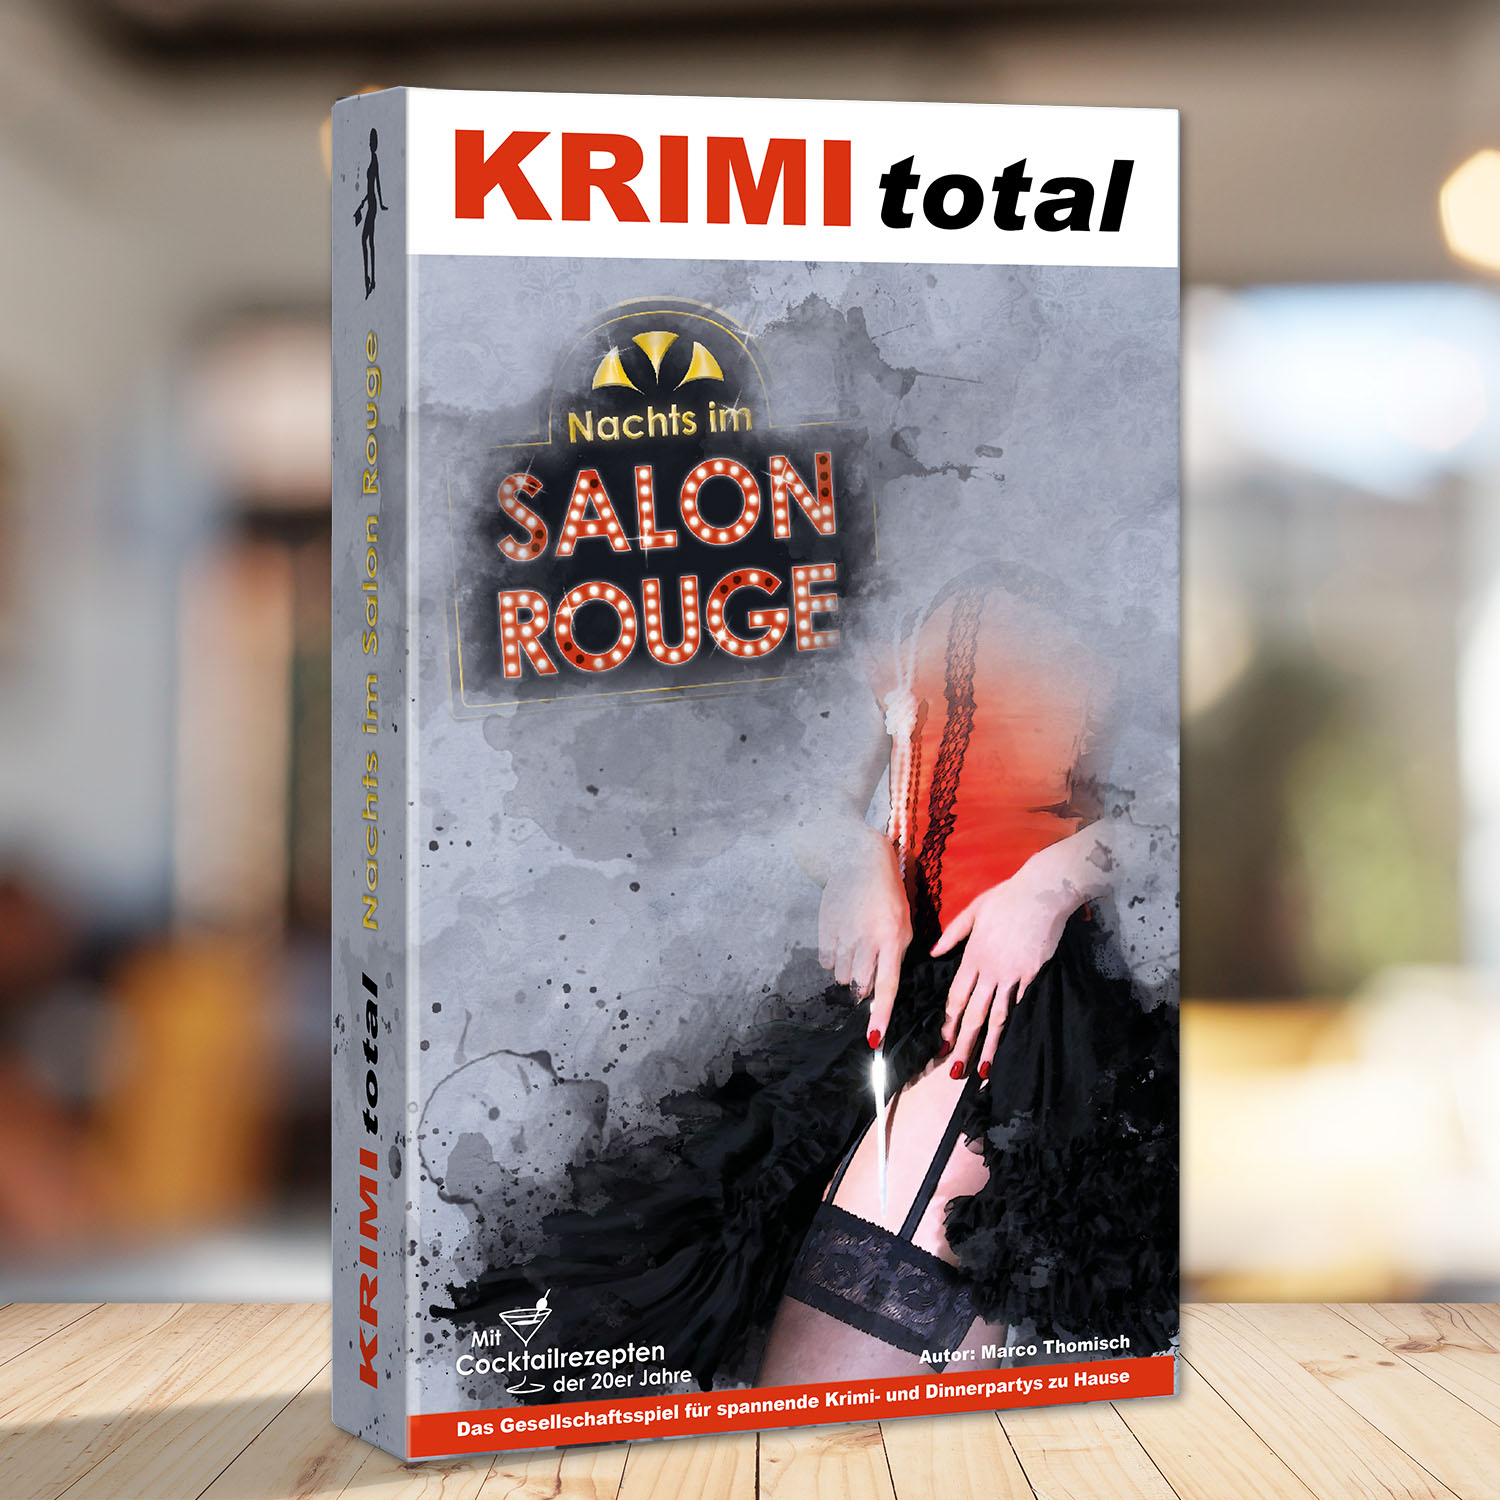 Abbildung eines Spielkartons des Krimispiels "KRIMI total - Nachts im Salon Rouge"